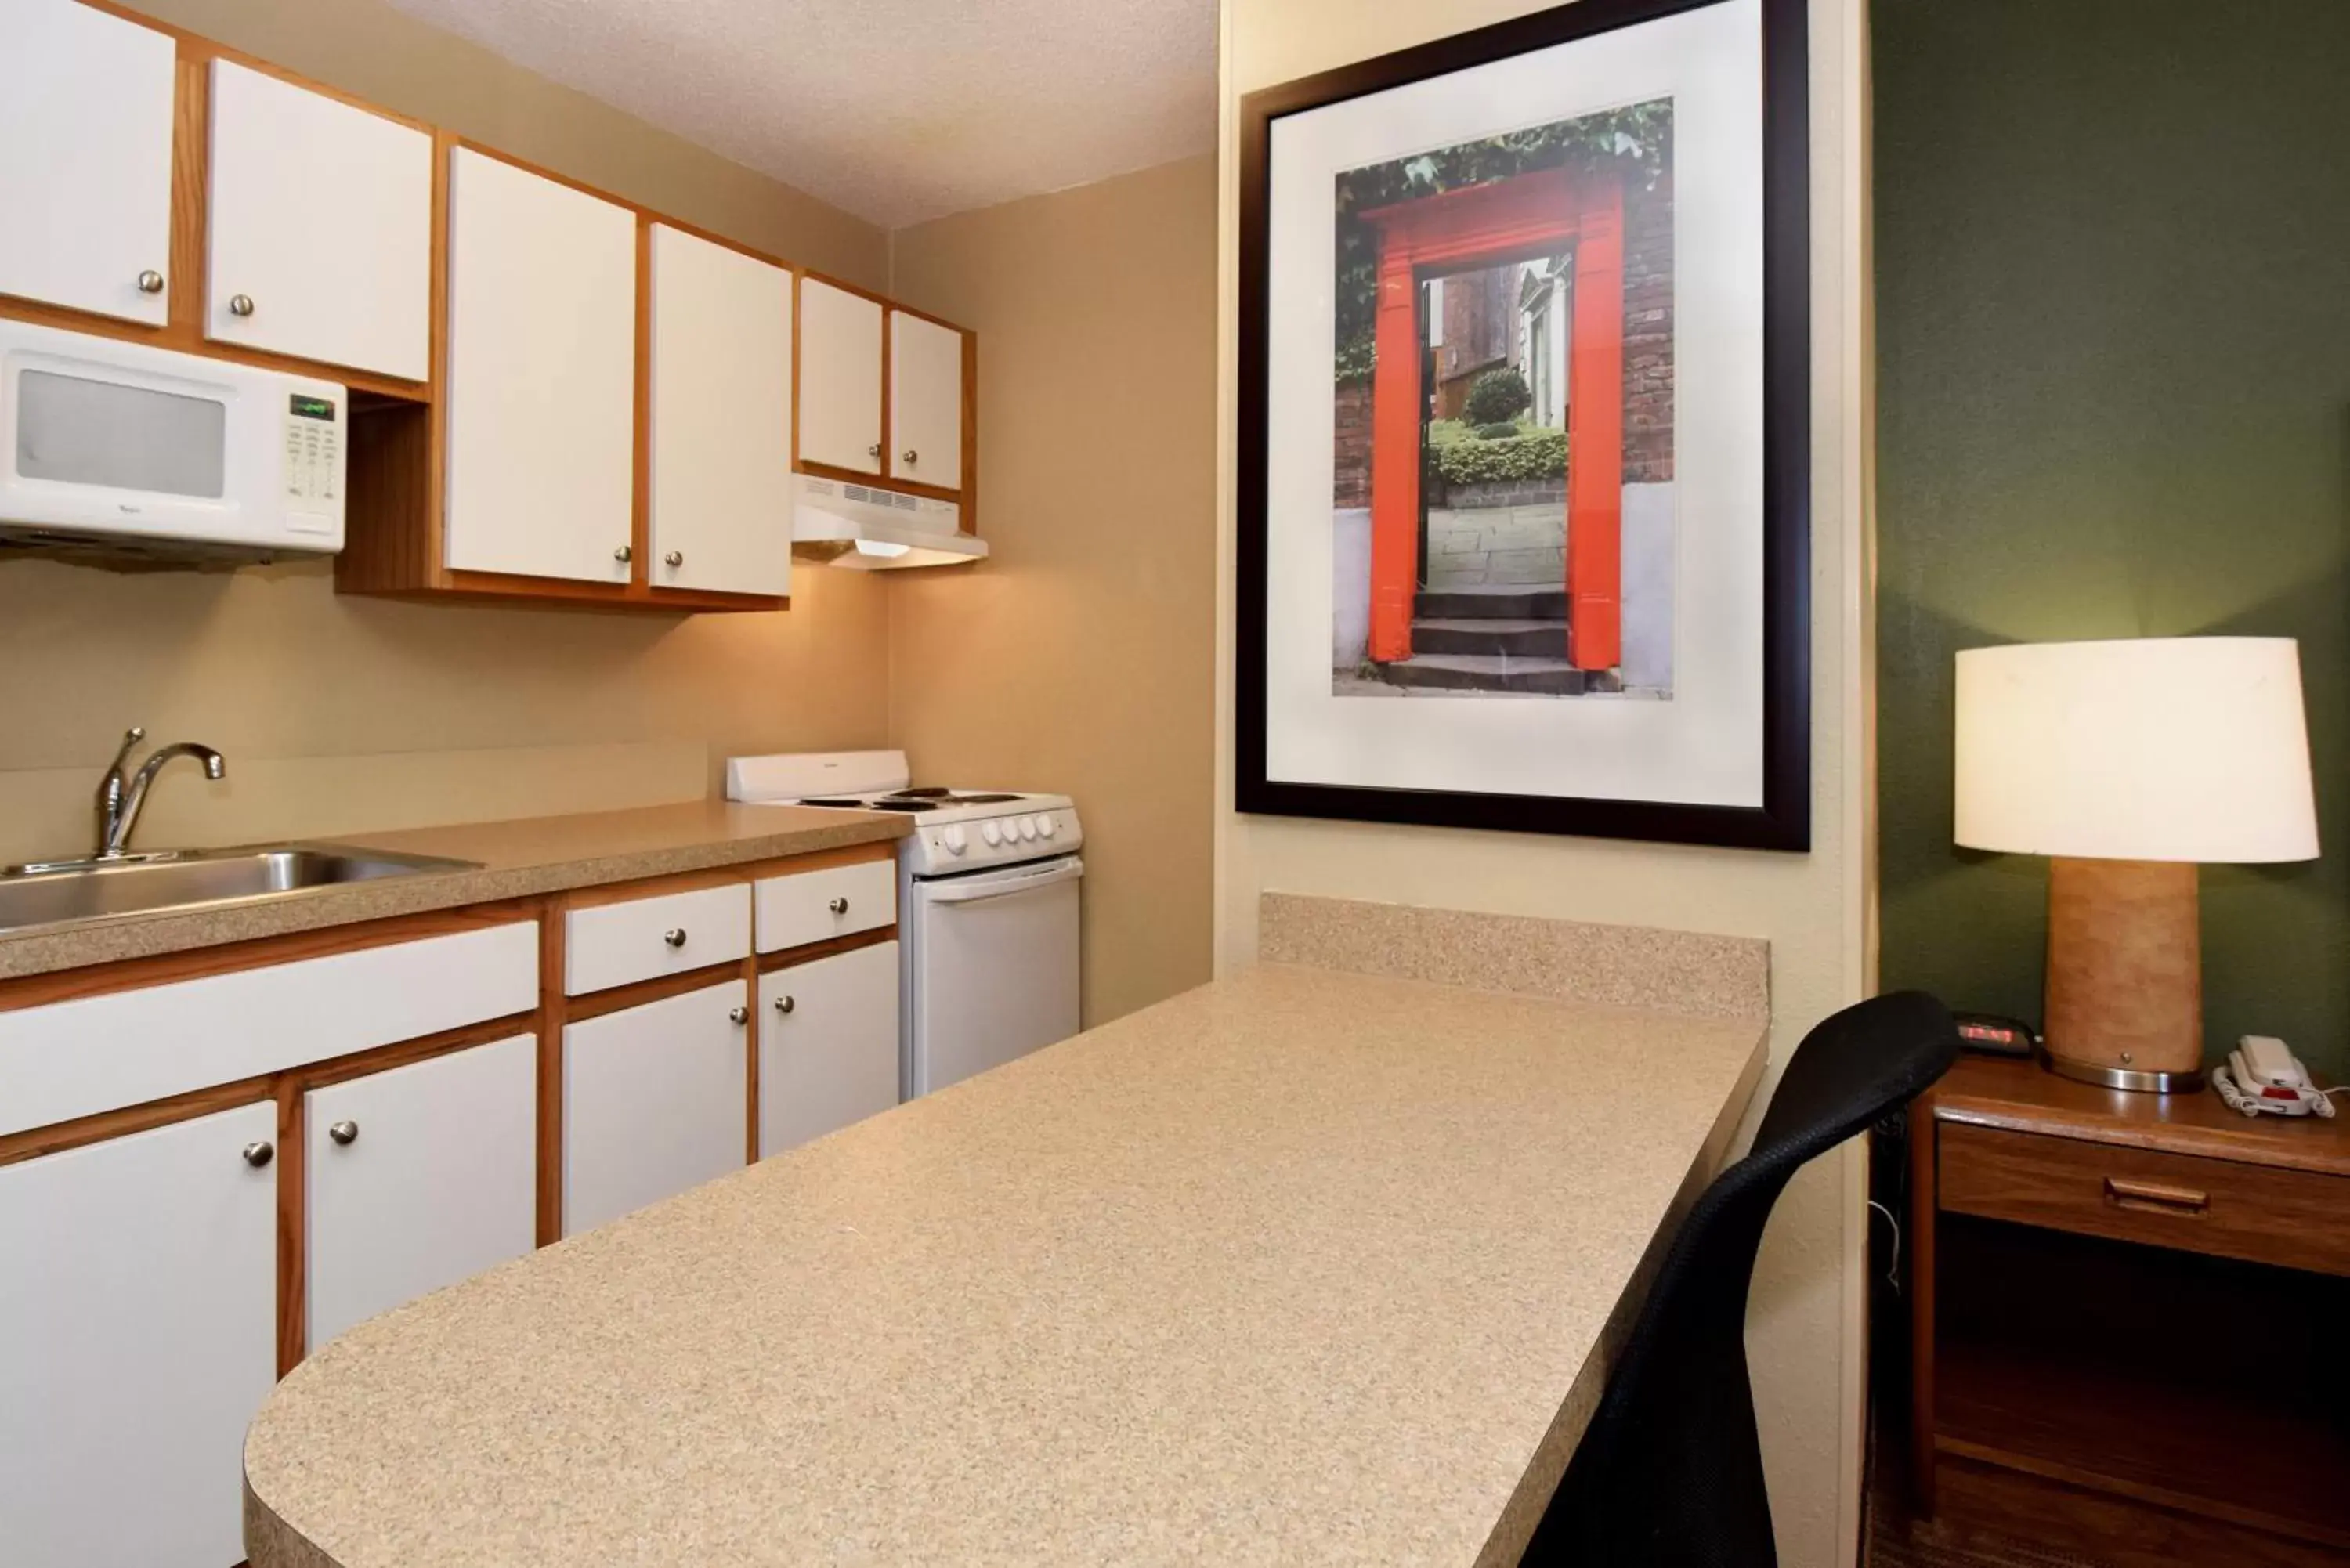 Kitchen or kitchenette, Kitchen/Kitchenette in Extended Stay America Suites - St Louis - Westport - Craig Road